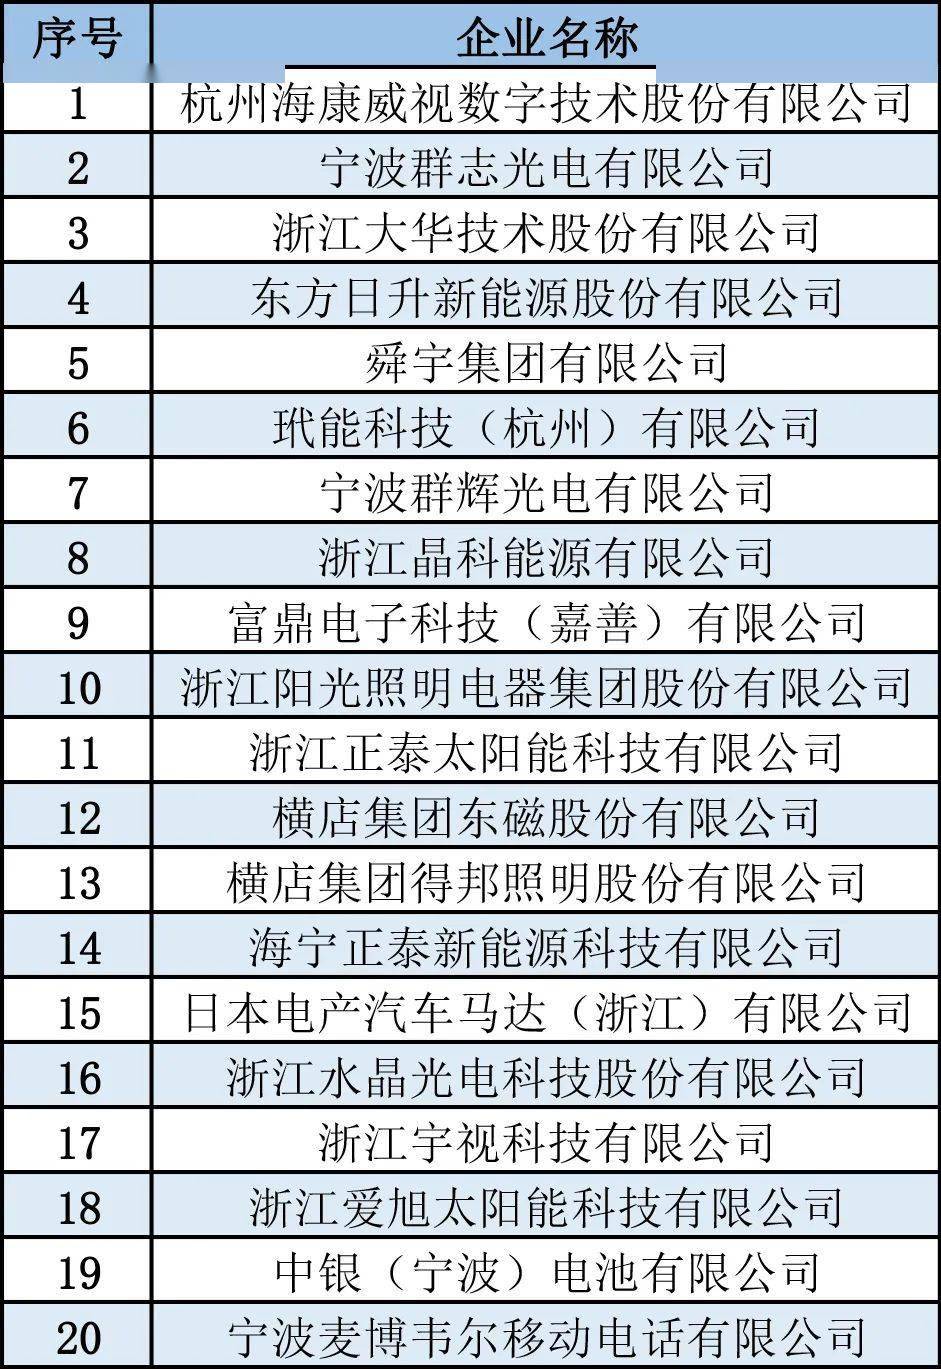 名单来了 2020年浙江省电子信息产业百家重点企业都有哪些